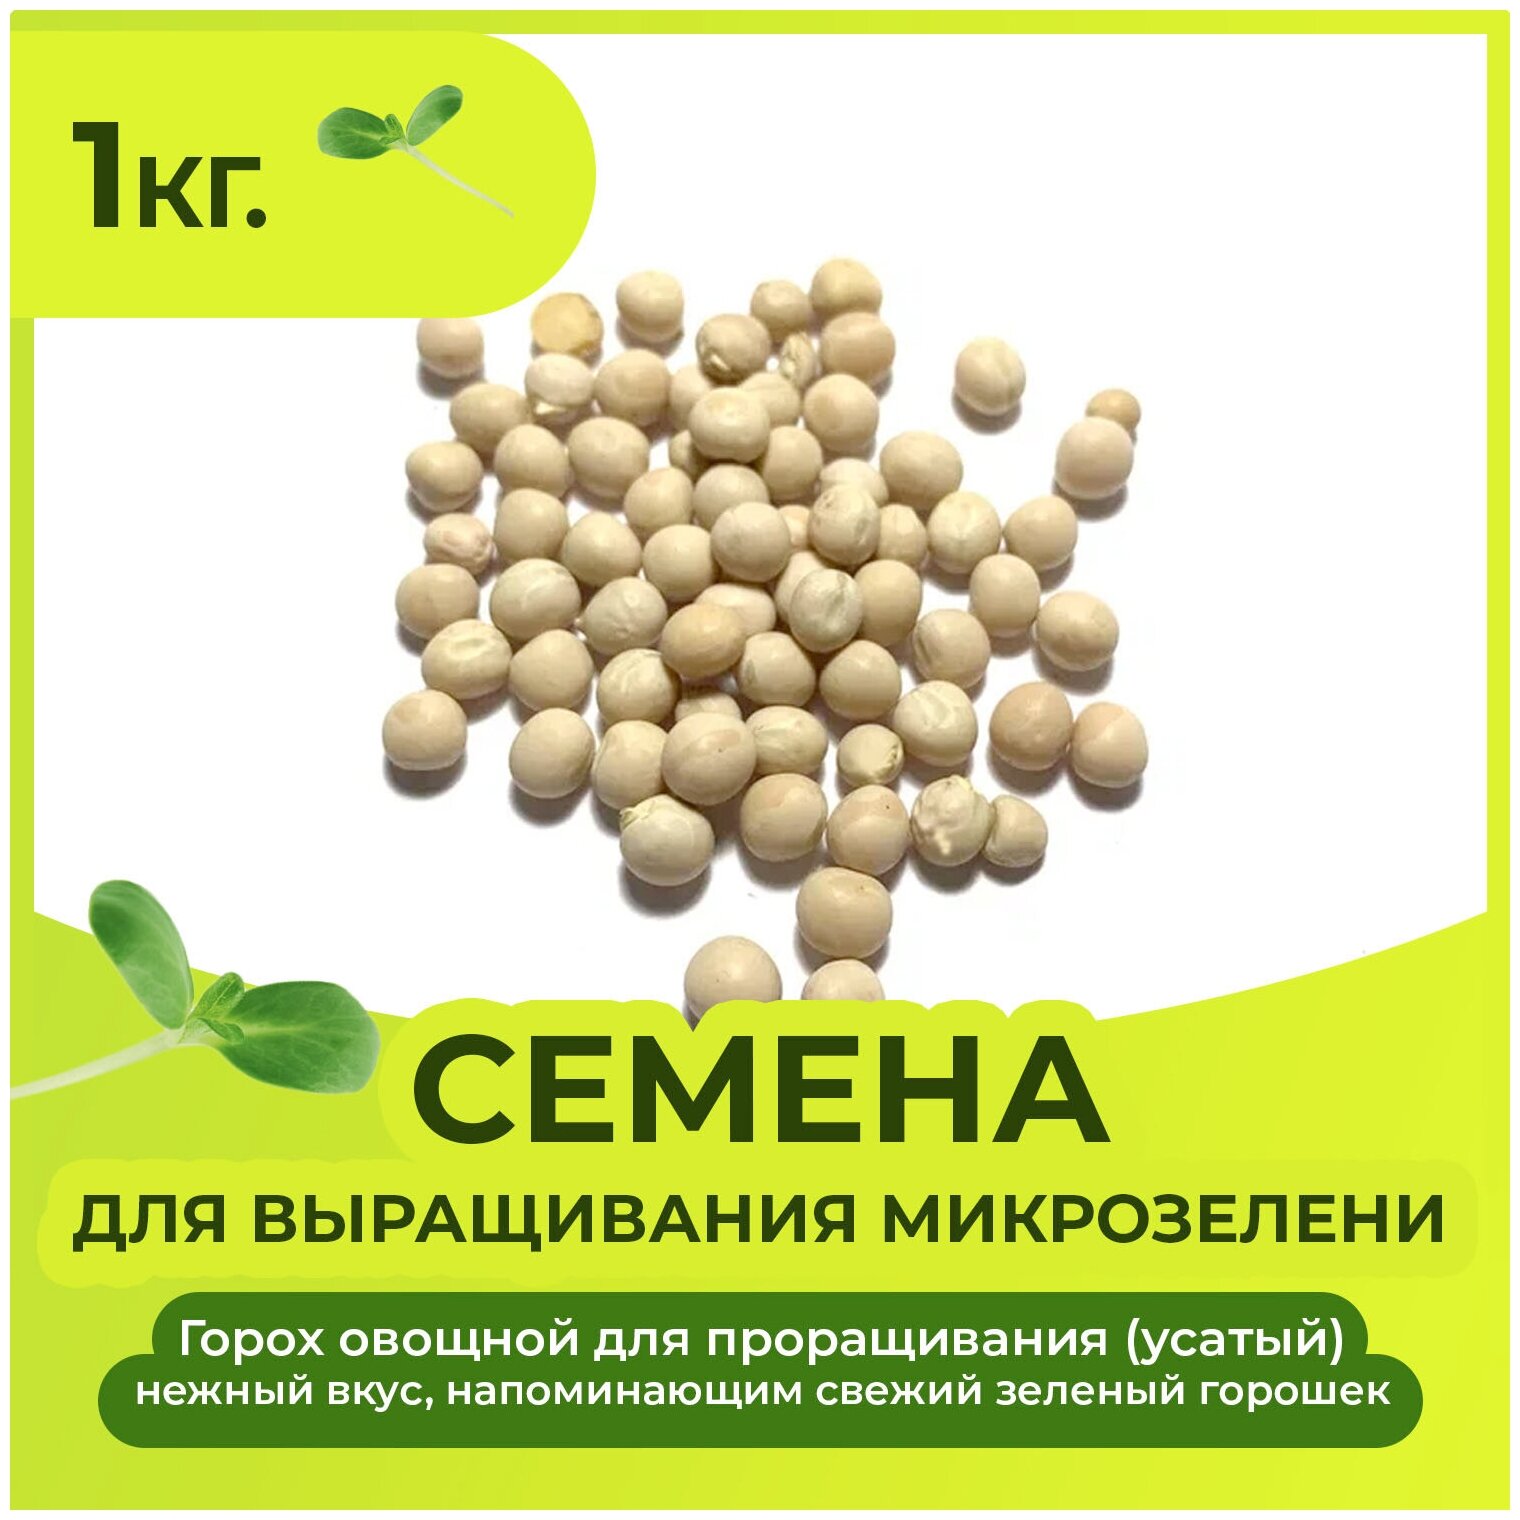 Семена гороха (усатый) для выращивания микозелени 1 кг.